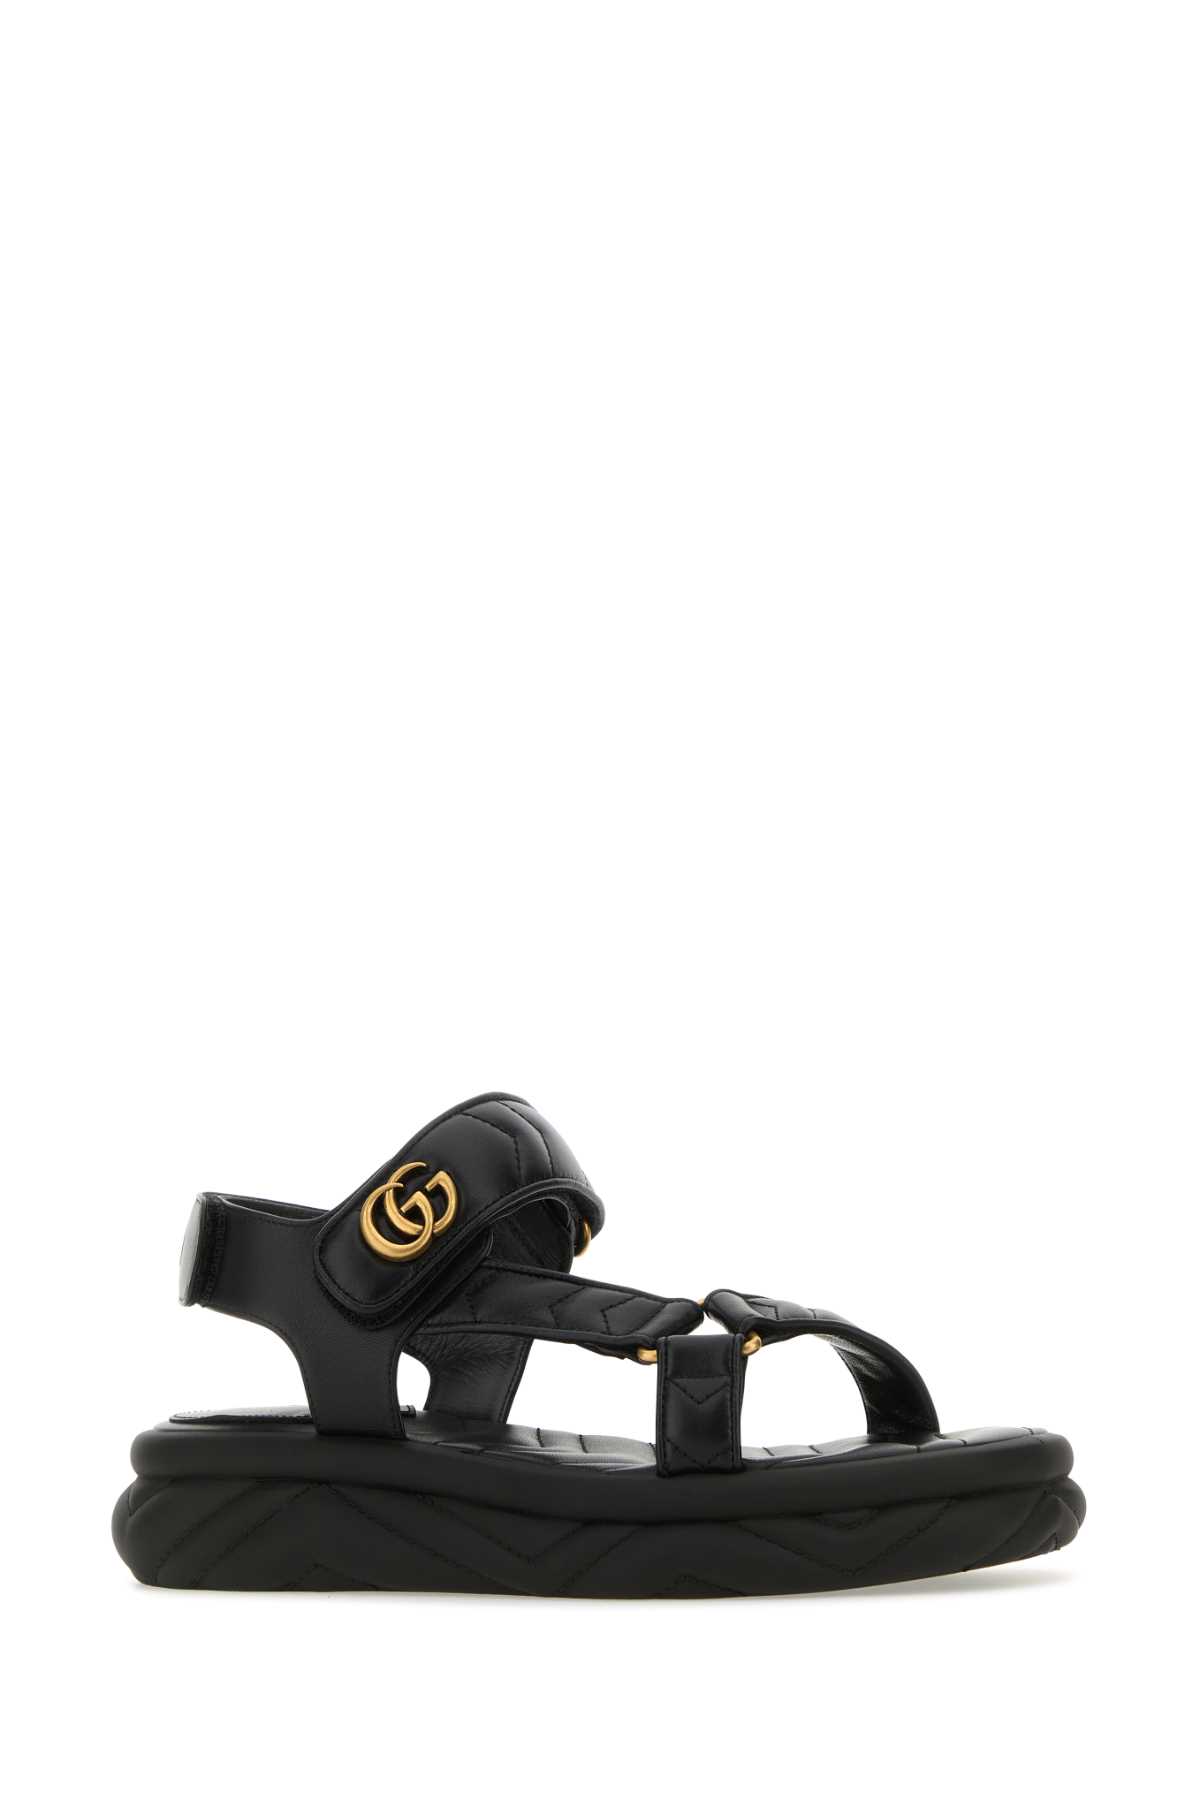 Shop Gucci Black Leather Sandals